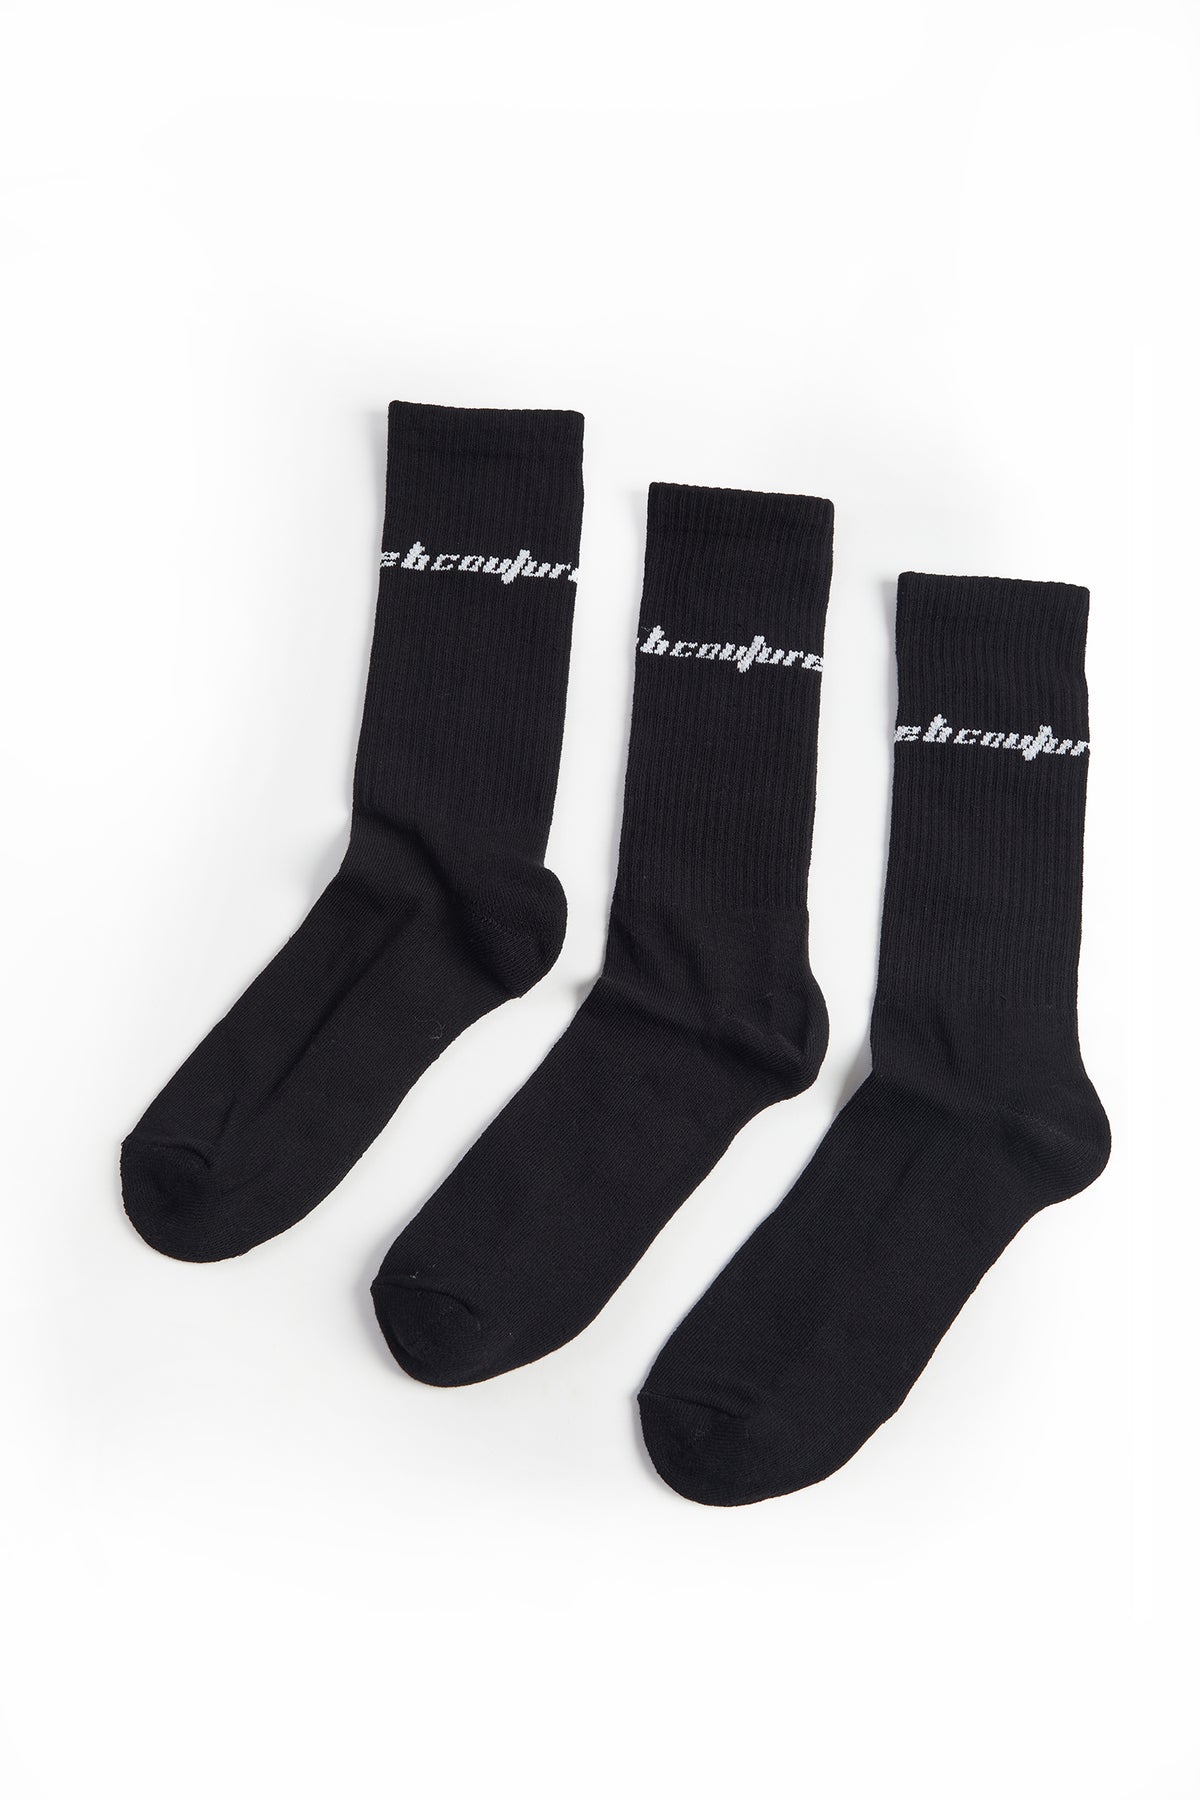 3 Pack of Socks - Black